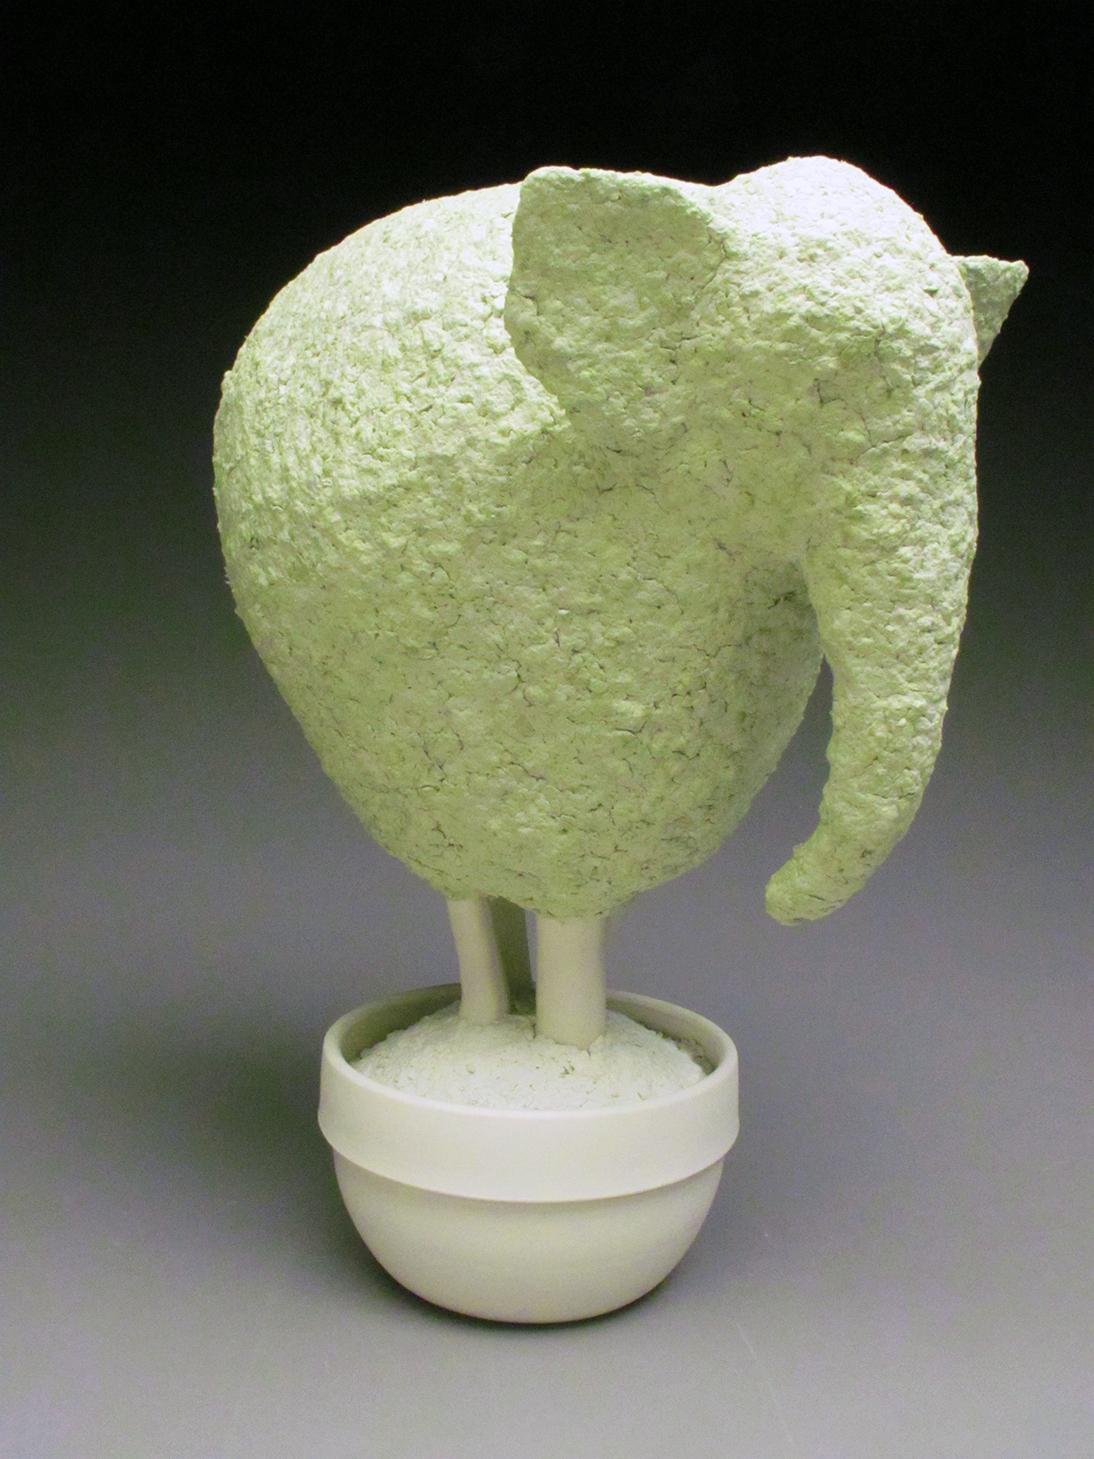 Esta preciosa escultura topiaria de elefante de porcelana y papel maché verde suave fue creada por la artista neoyorquina Bethany Krull.  La parte de la escultura que corresponde a la vasija está moldeada en varias piezas, mientras que el Topiario